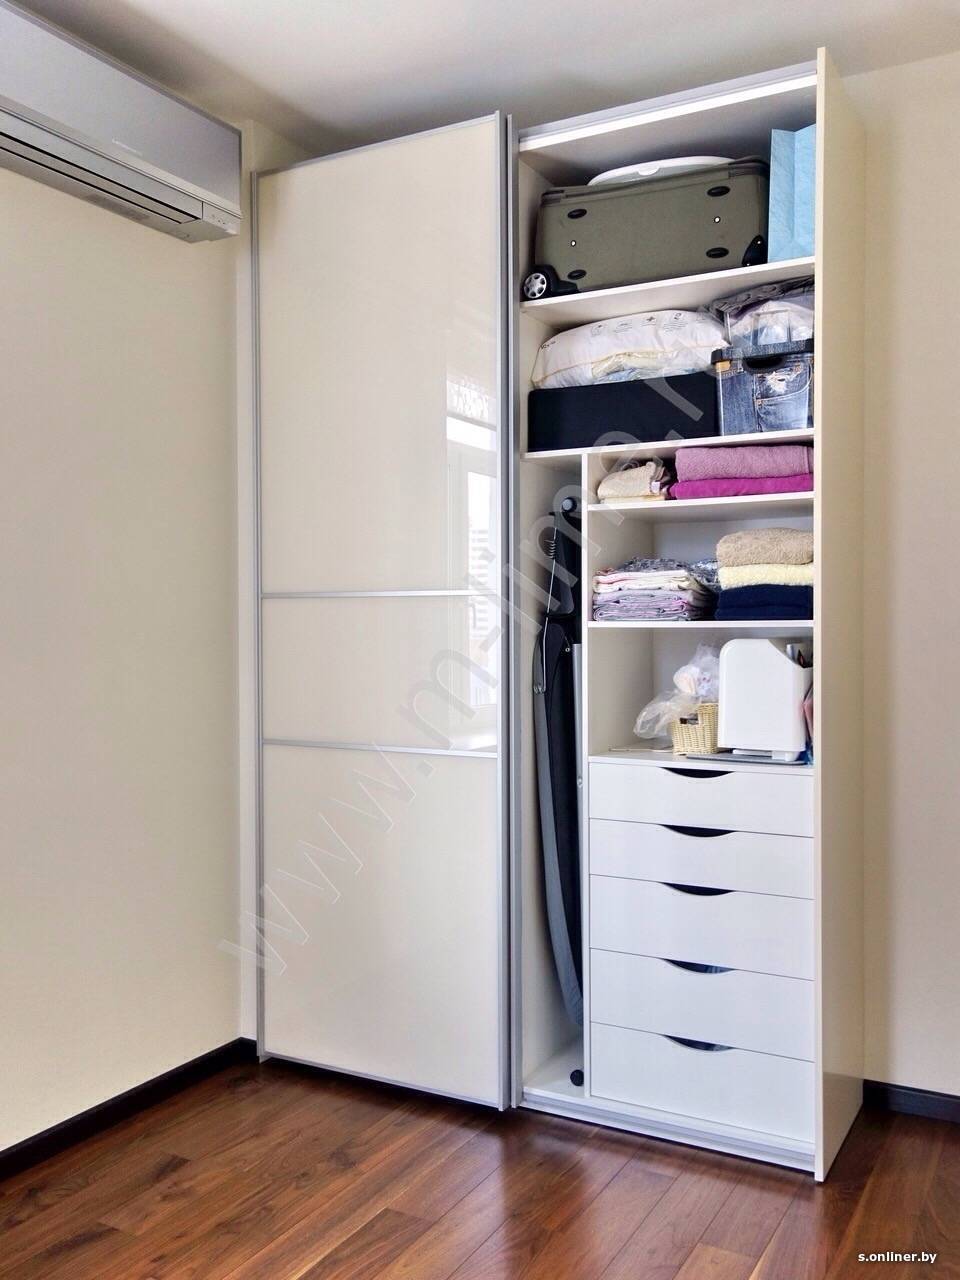 Вы в тупике? не знаете, какой холодильник купить - встроенный или отдельно стоящий? читайте нашу статью!